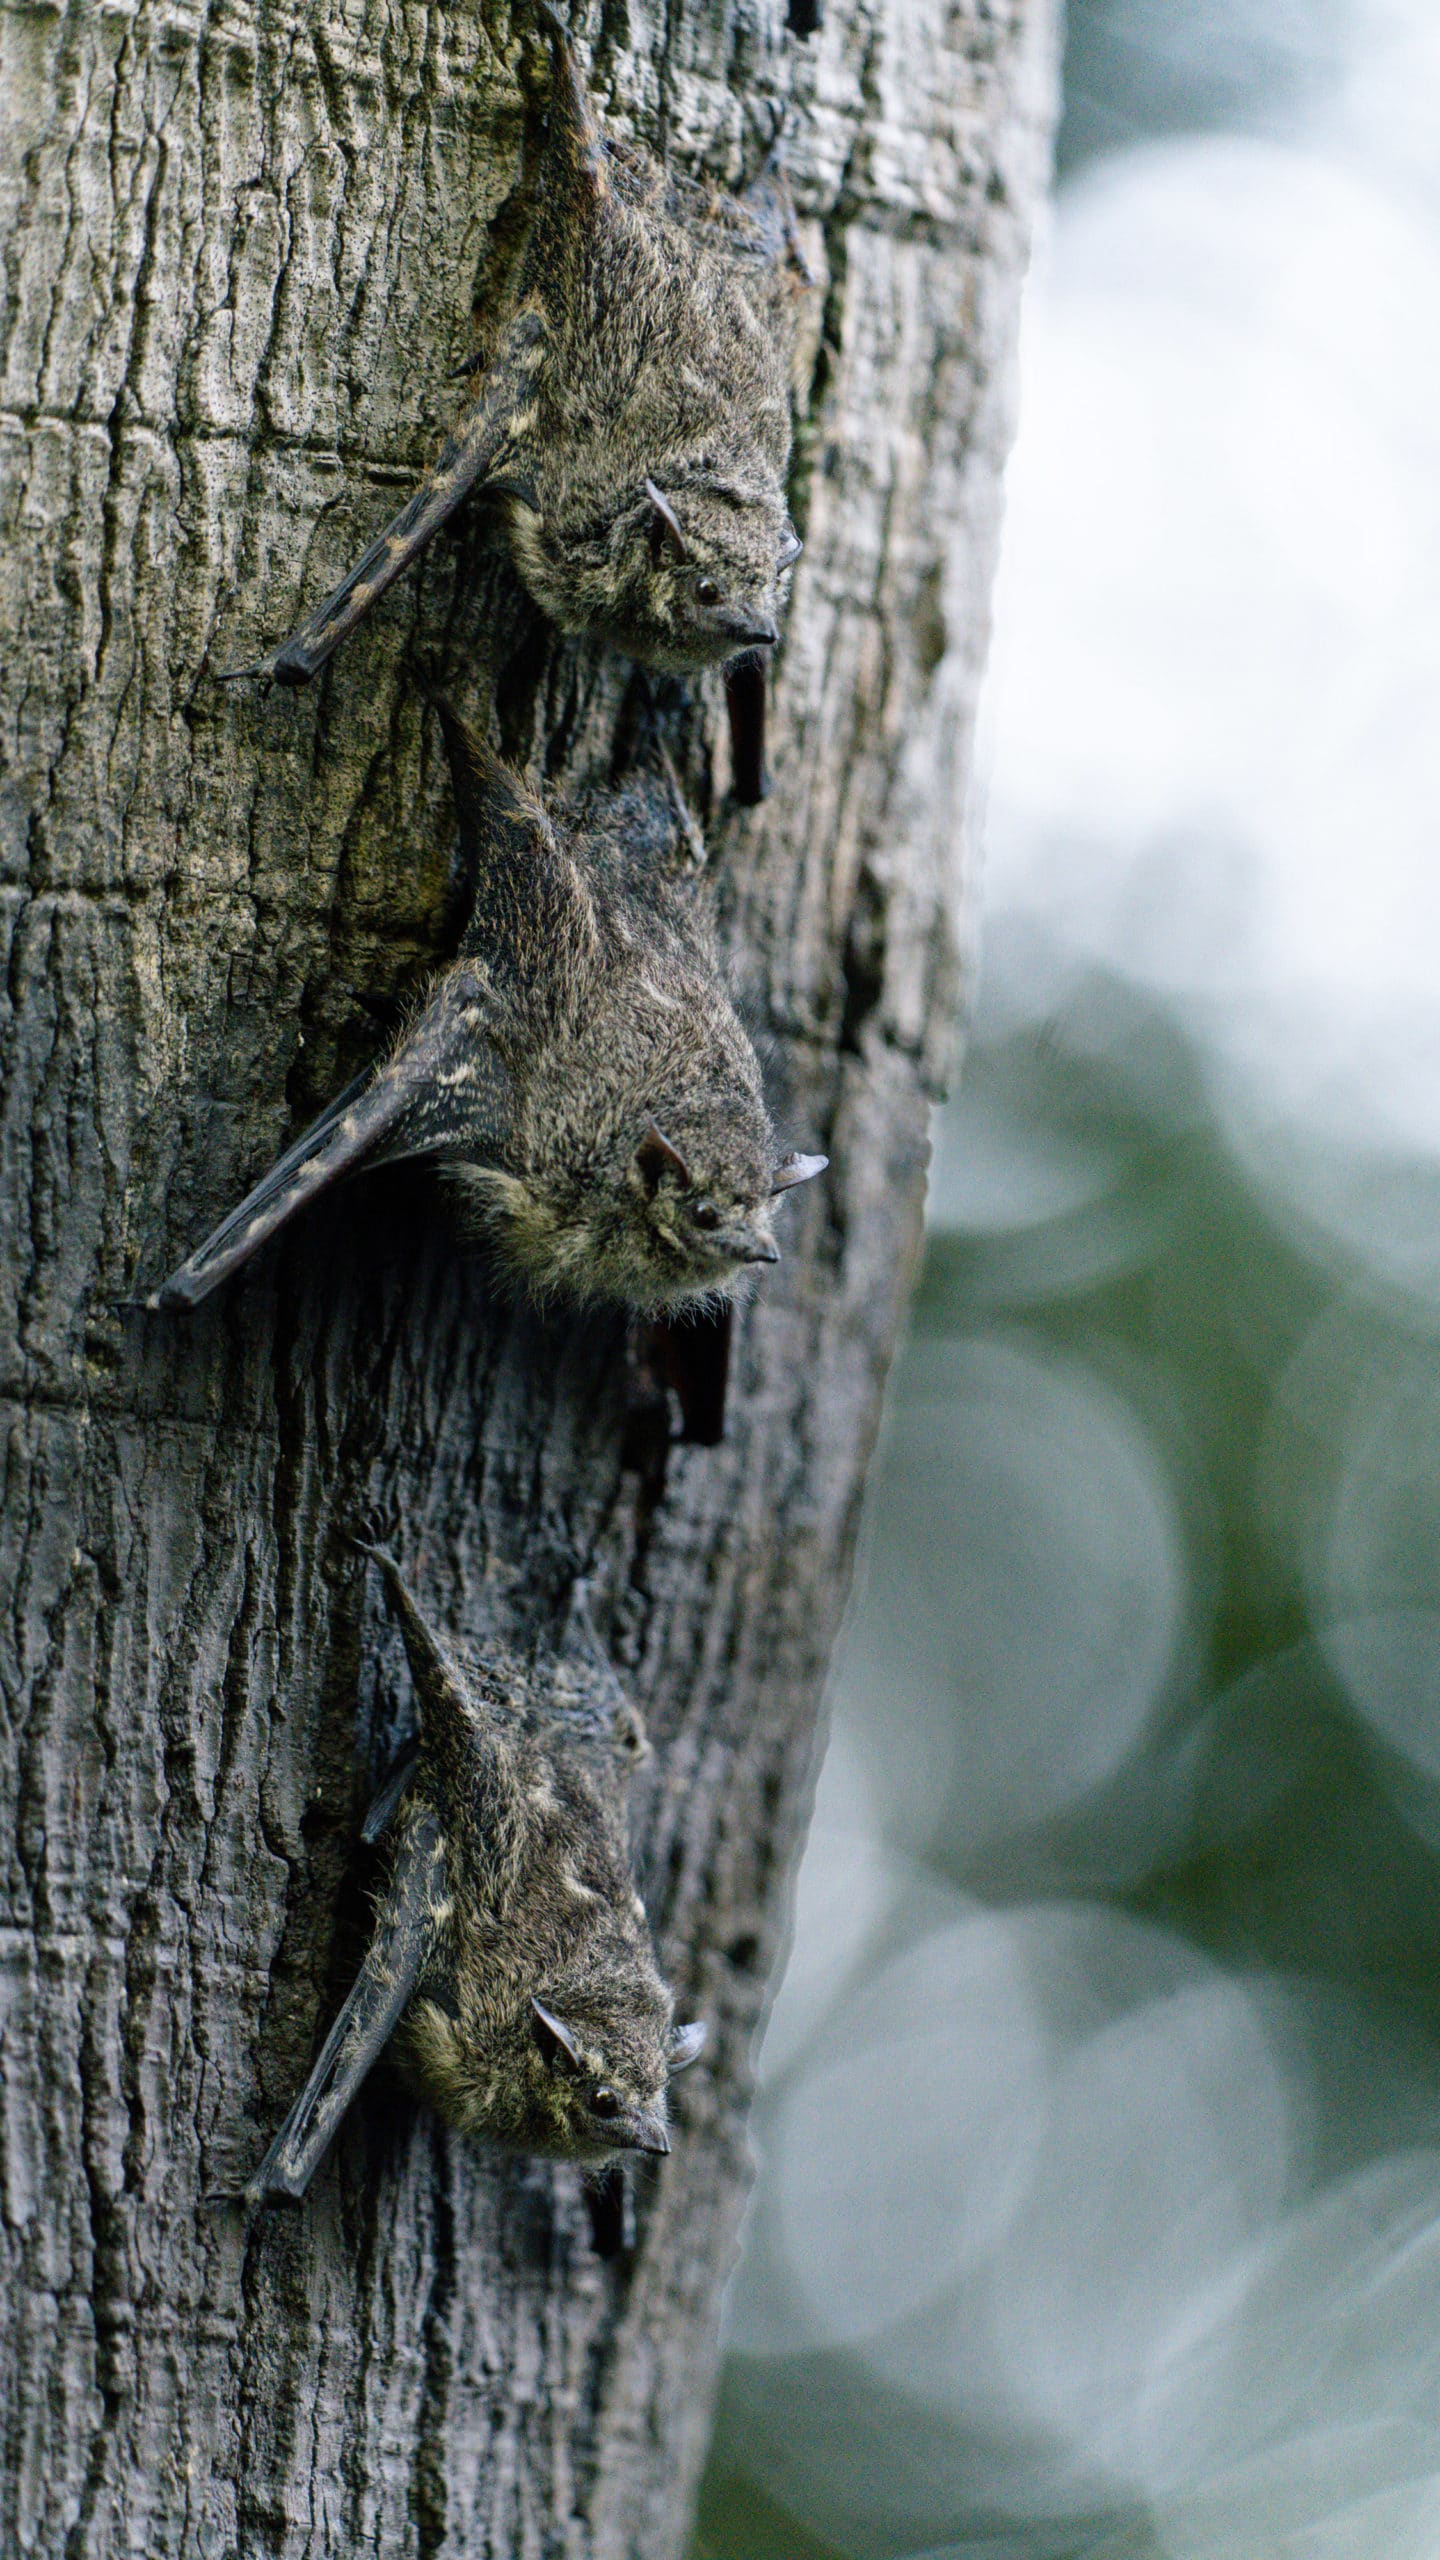 leaf nosed bats up close